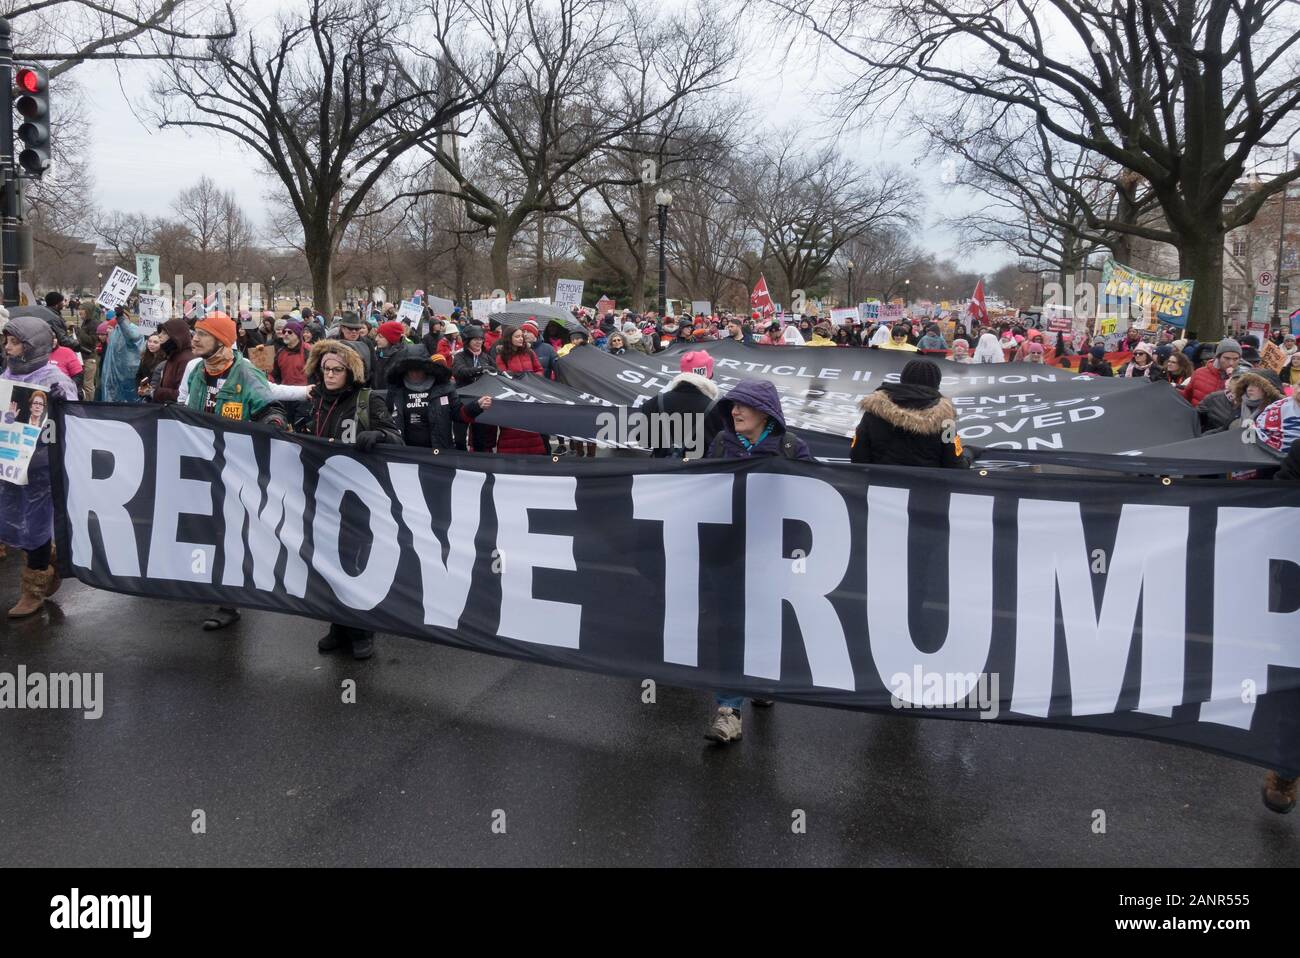 WASHINGTON, DC - JAN. 18, 2020 : enlever à la bannière d'atout à la Marche des femmes 2020. Le Washington Monument est la distance. C'était la 4e édition de la Marche des femmes, et l'une des nombreuses marches autour du nous. Banque D'Images